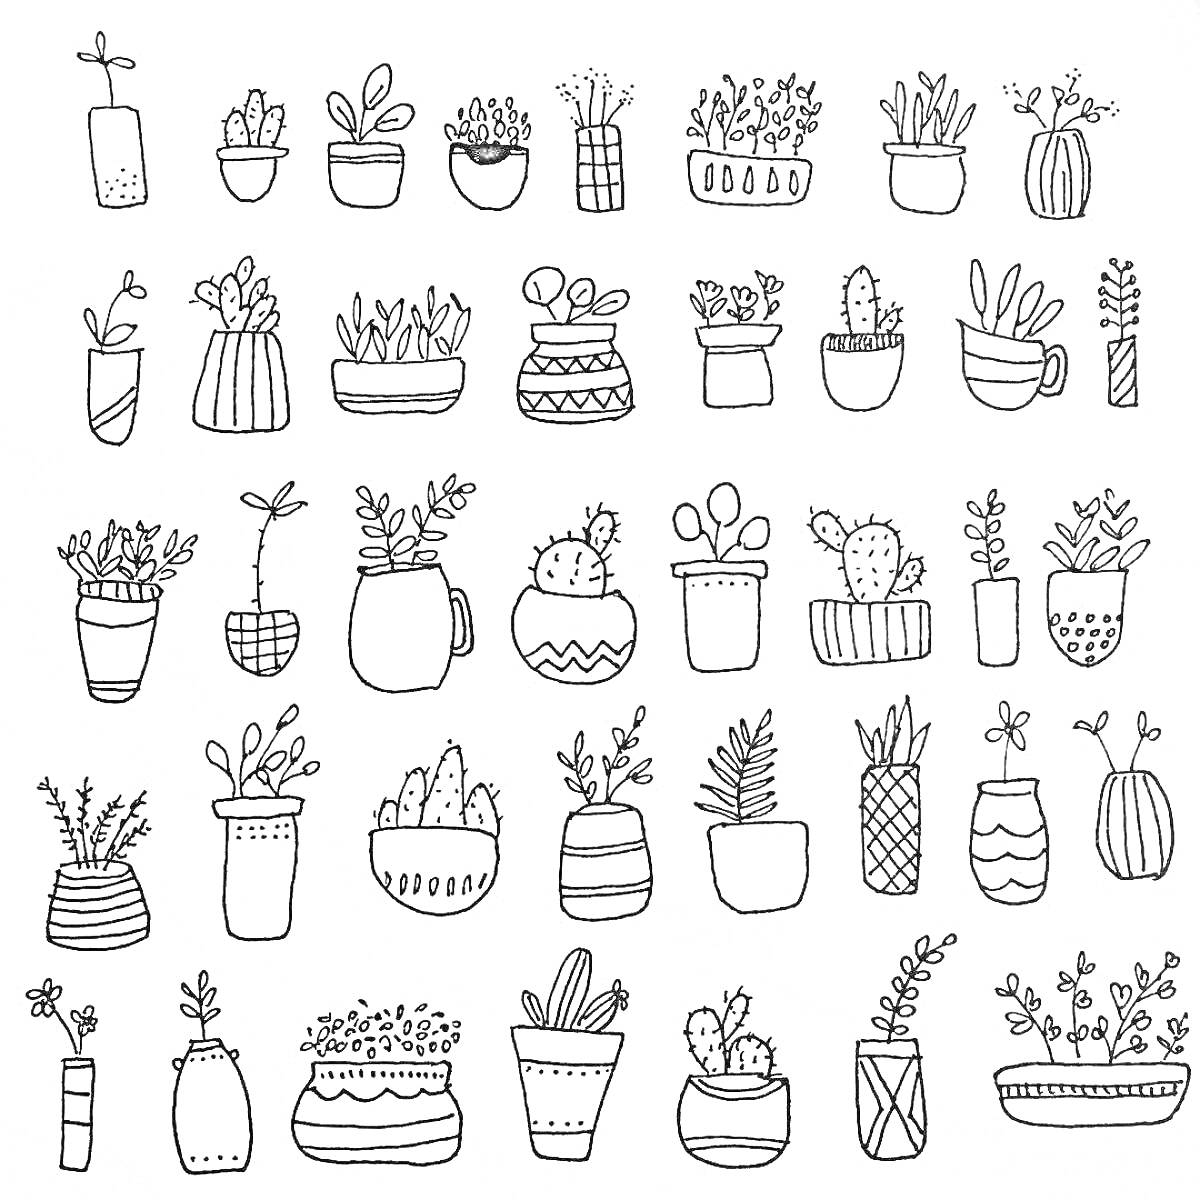 Черно-белая раскраска с горшками и растениями, включая суккуленты, кактусы и комнатные растения